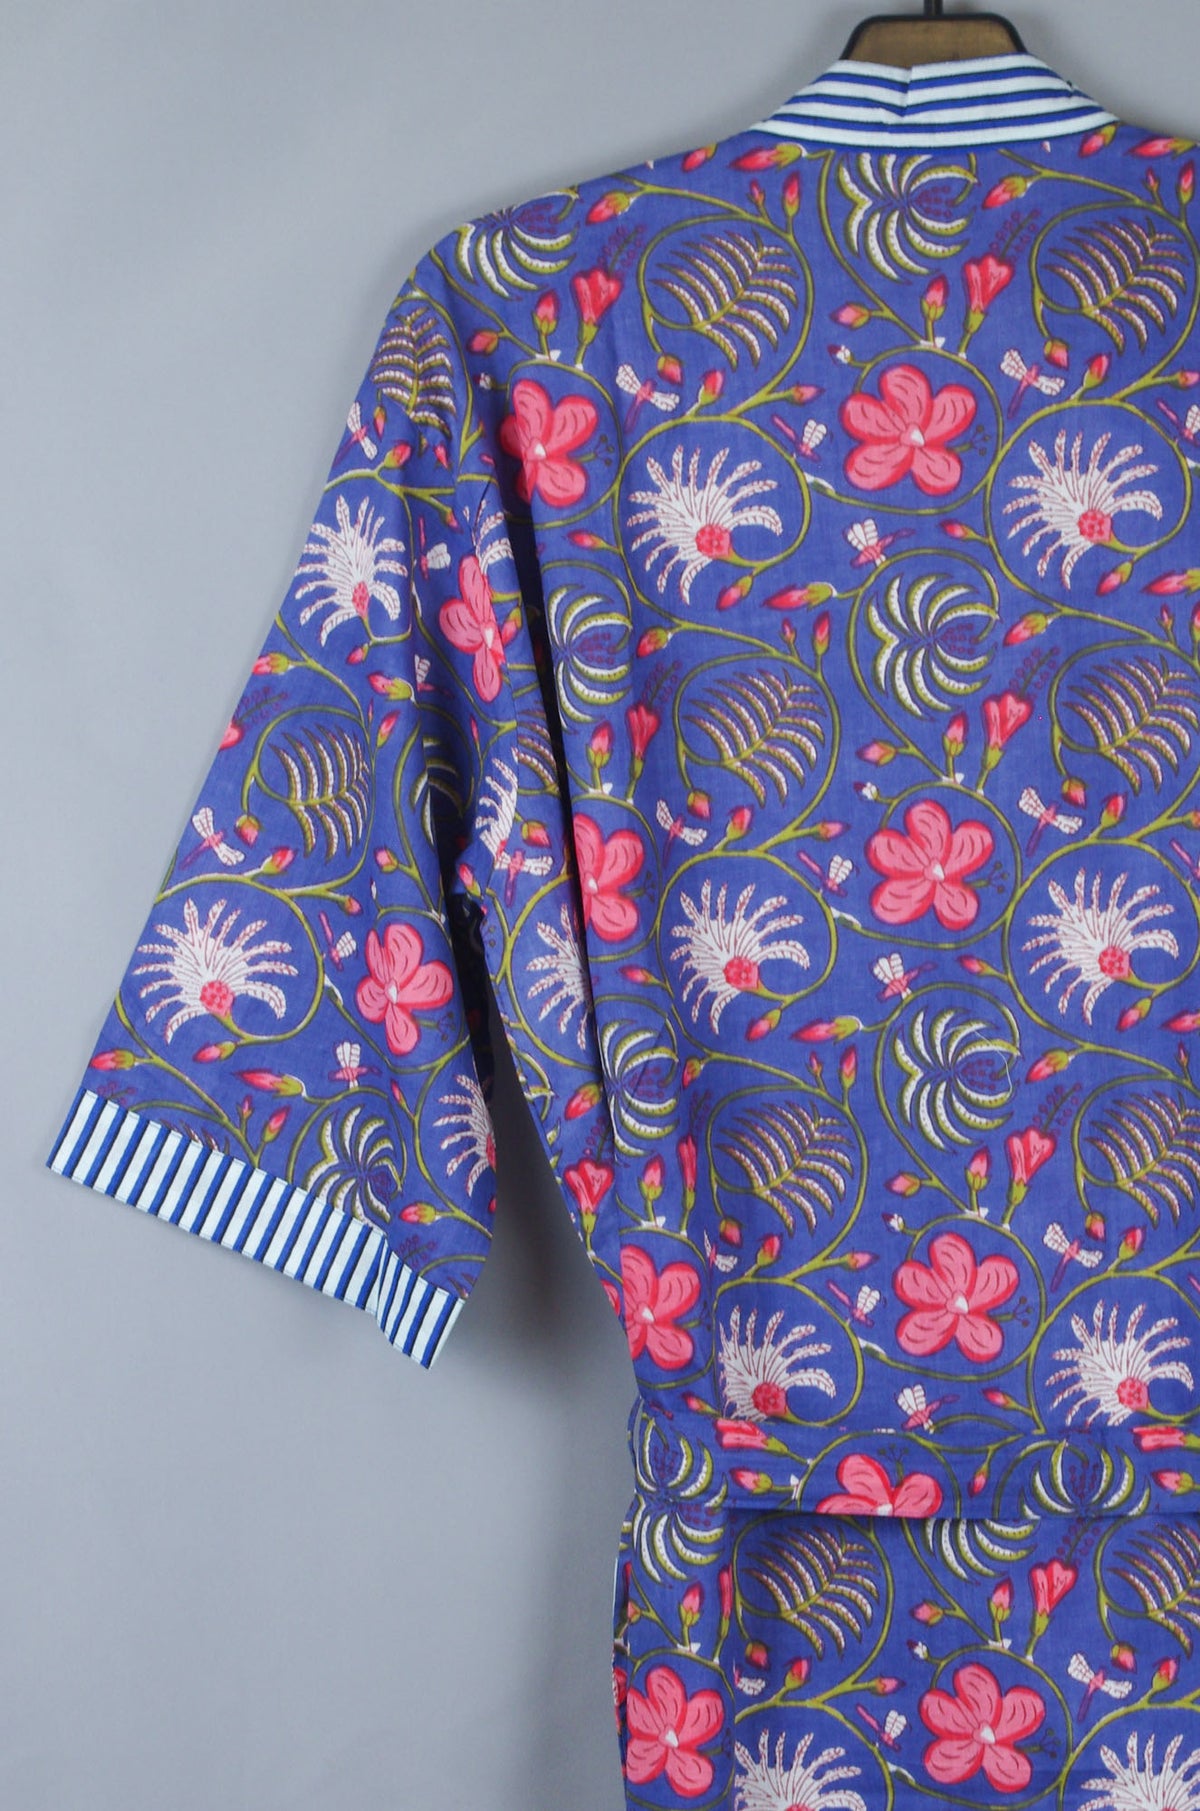 Langer Kimono-Morgenmantel aus Baumwolle mit modernem Blumenmuster auf marineblauer Basis